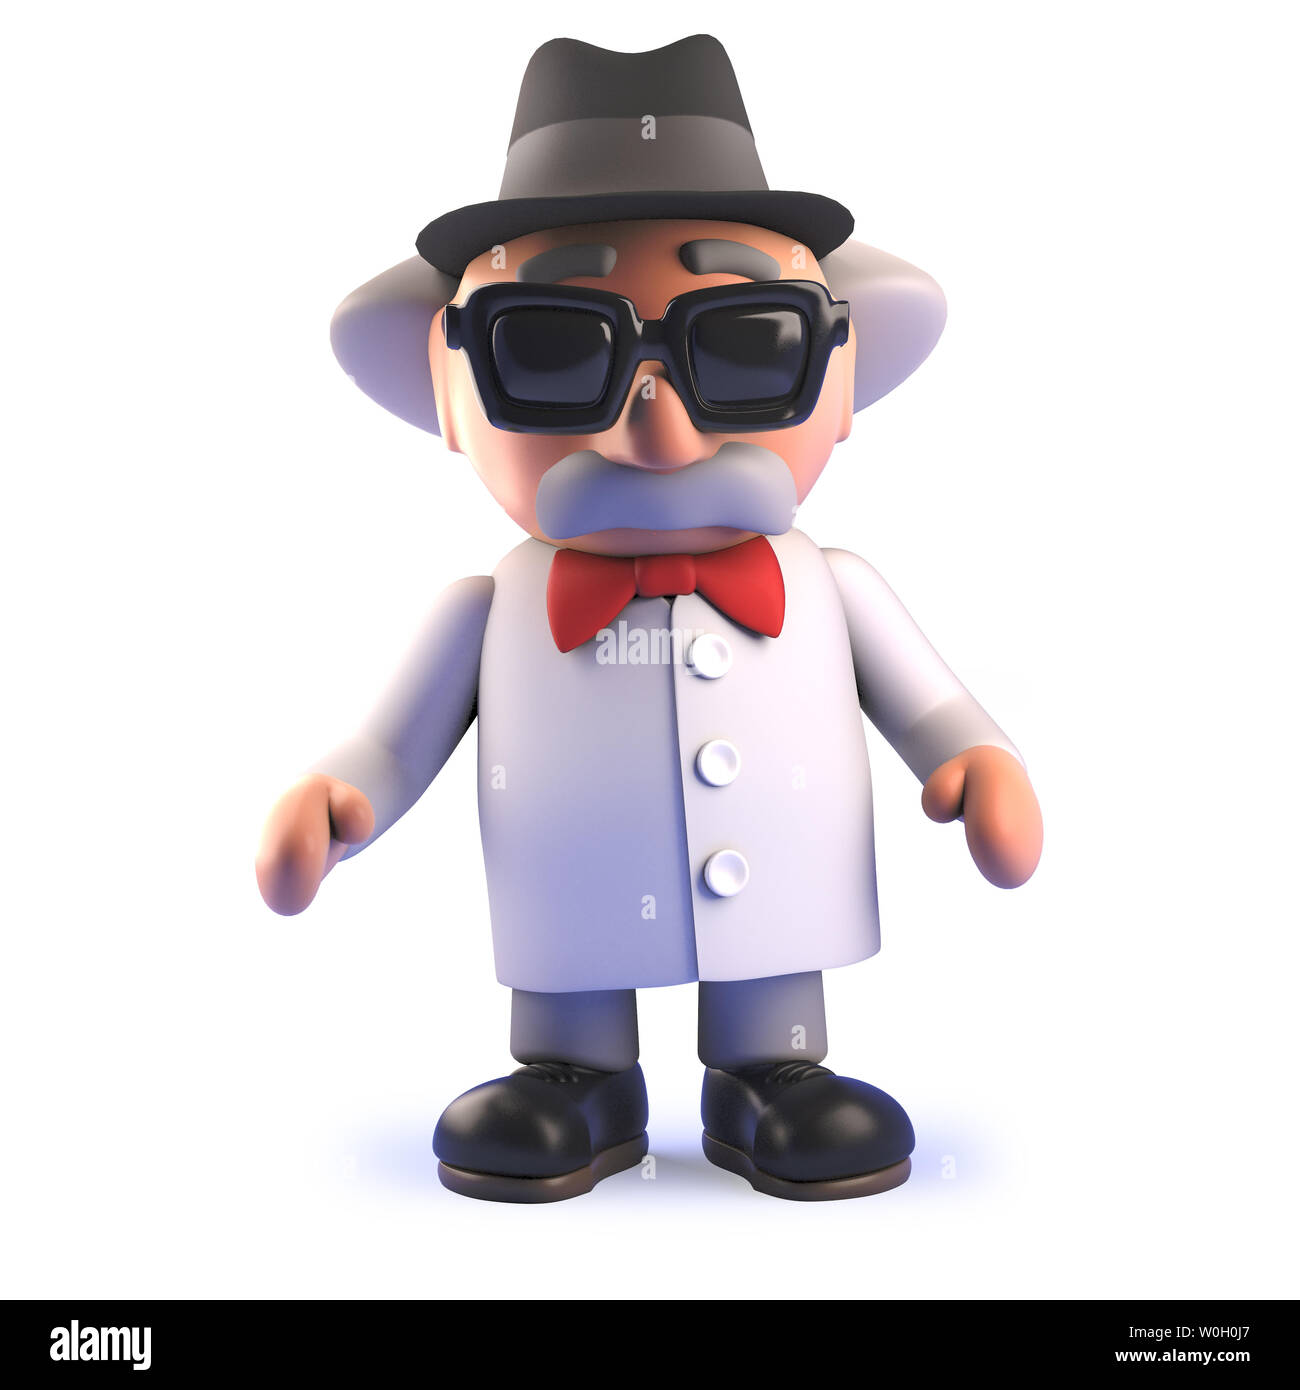 Immagine 3D rappresentata di uno scienziato pazzo professore personaggio  dei cartoni animati in 3d che indossa un pasticcio di maiale trilby hat  Foto stock - Alamy